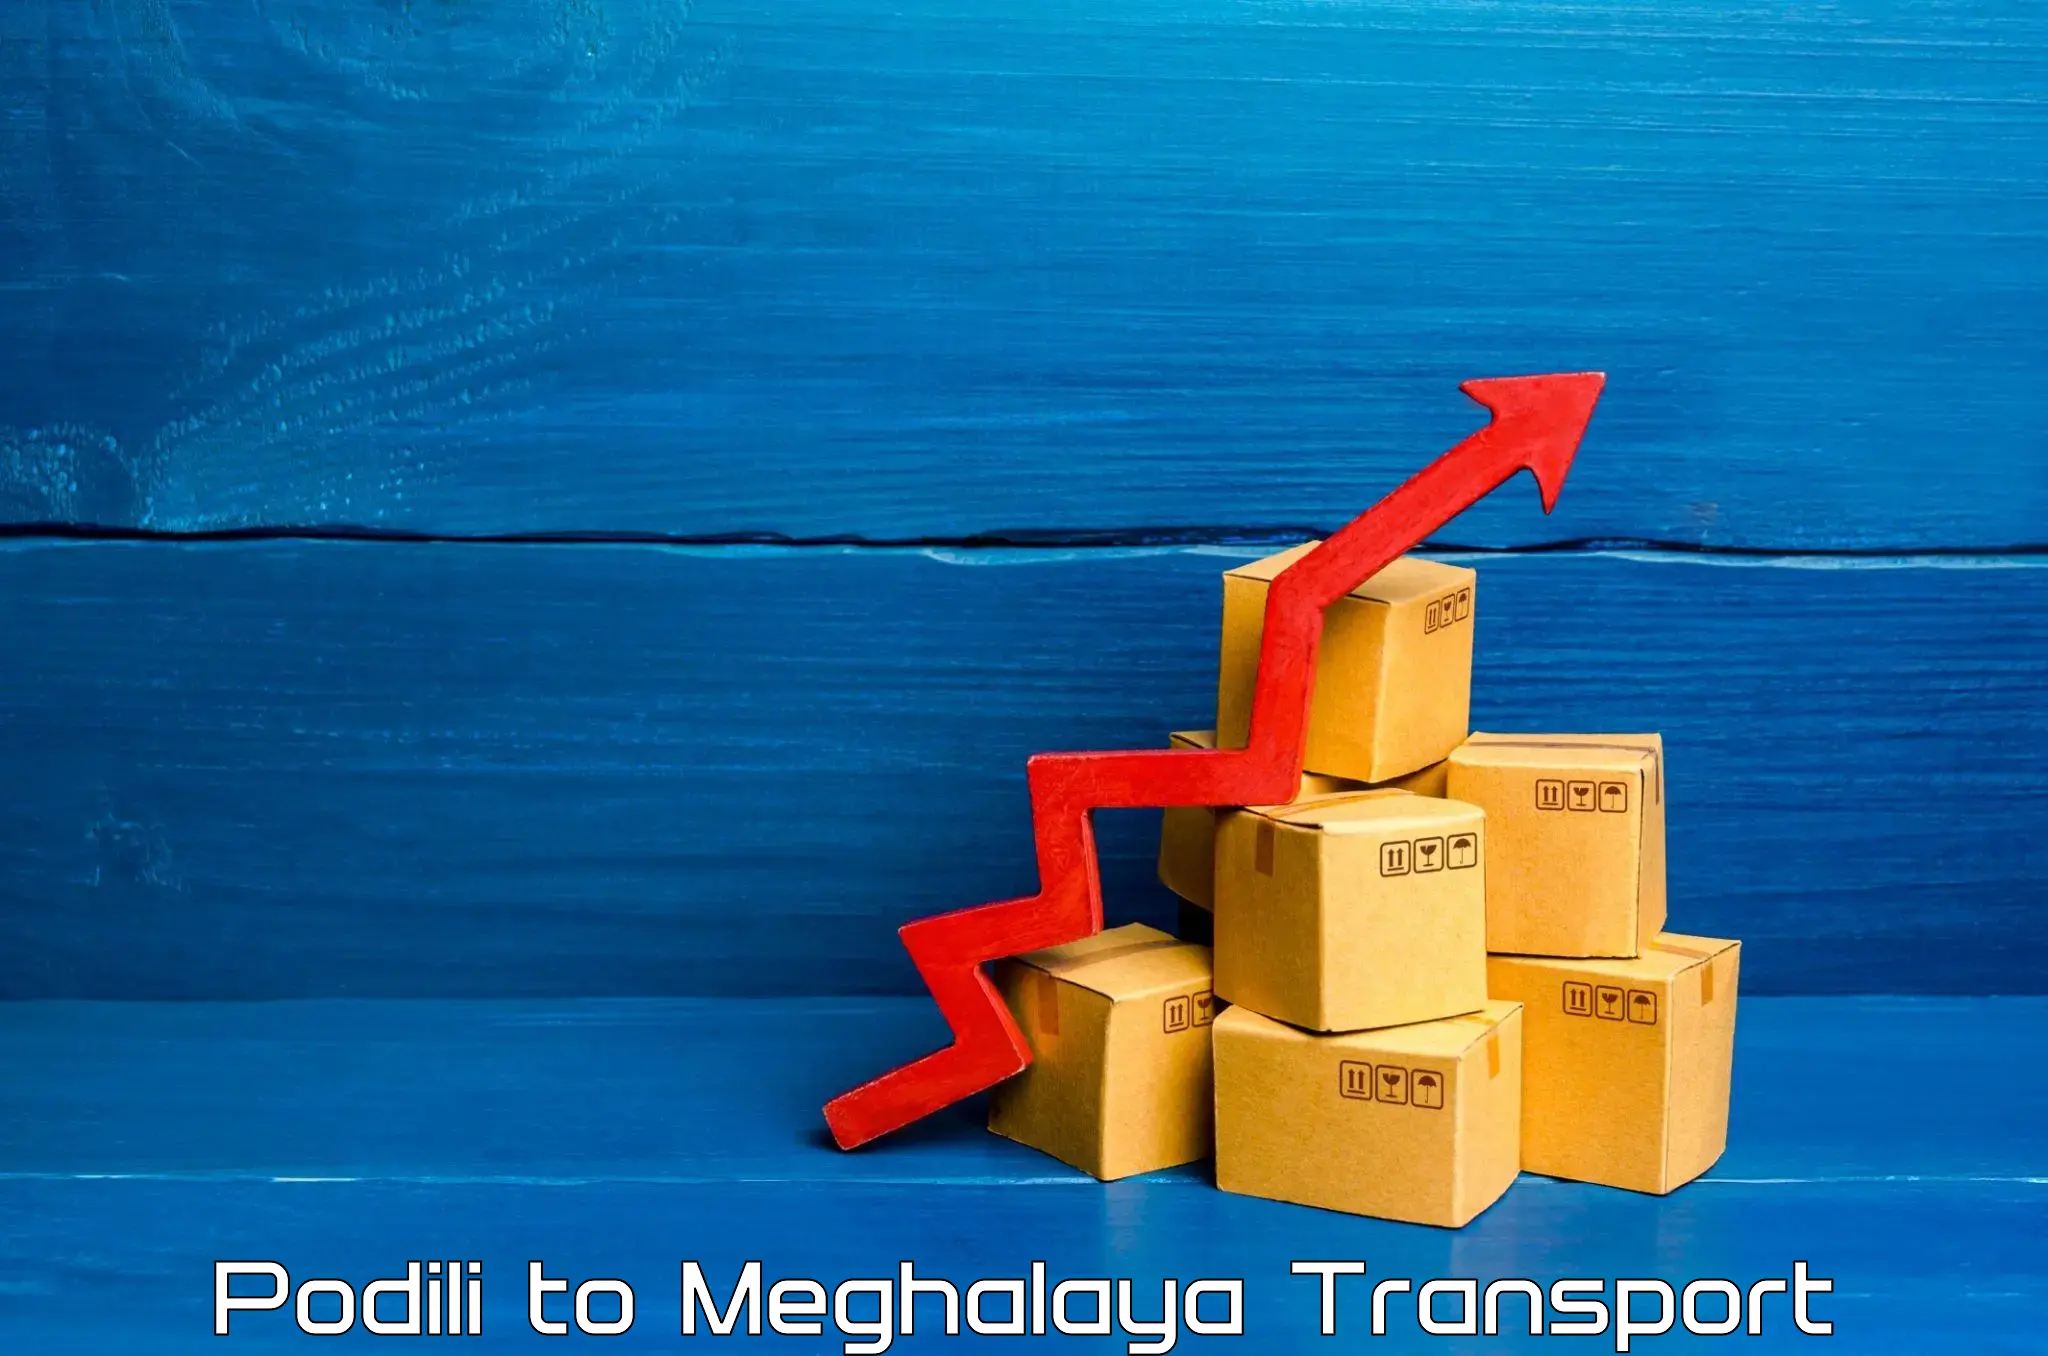 Daily parcel service transport Podili to NIT Meghalaya